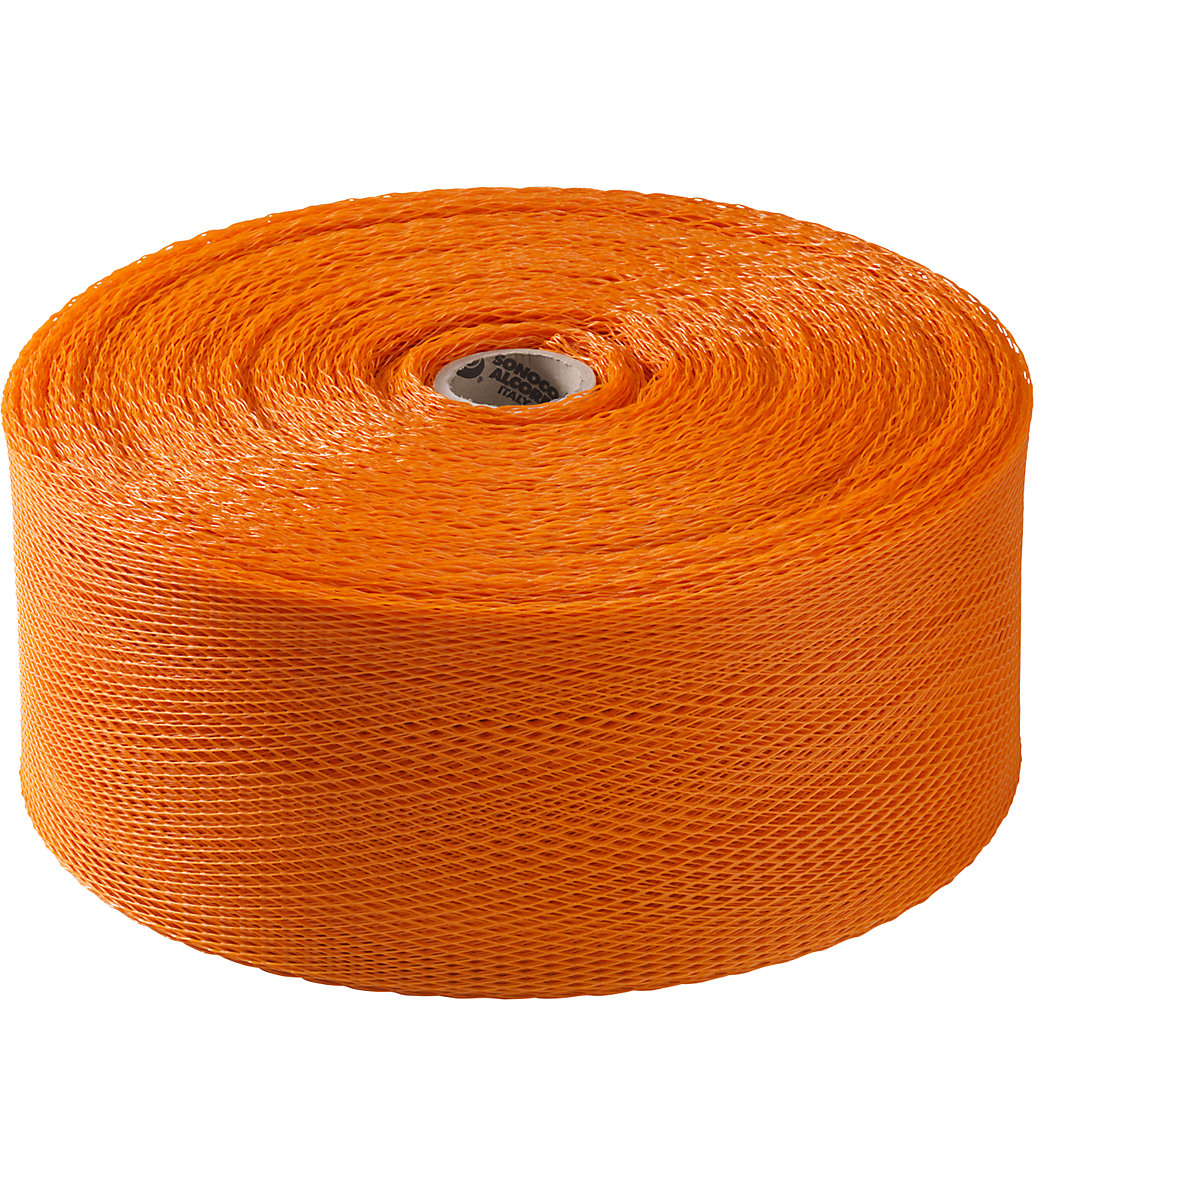 Materiaalbeschermingsnet, polyethyleen, 1 rol, oranje, voor Ø 200 – 320 mm-4